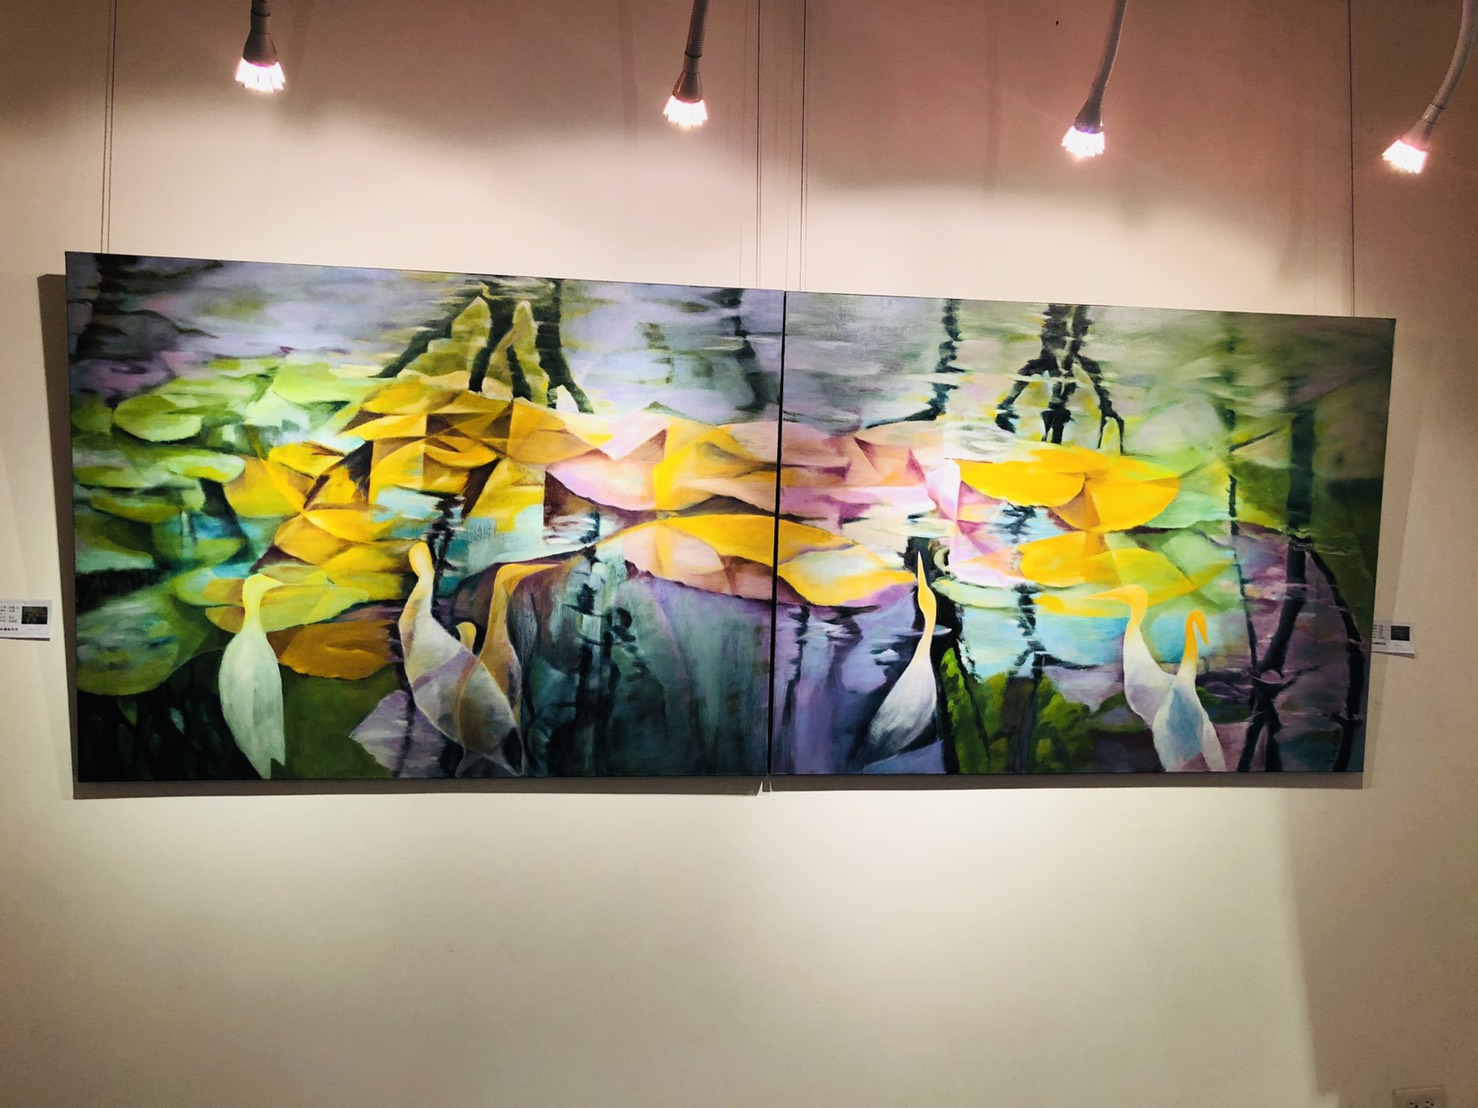 黃國豐老師的油畫個展 「意象·印象 意隨緣起」